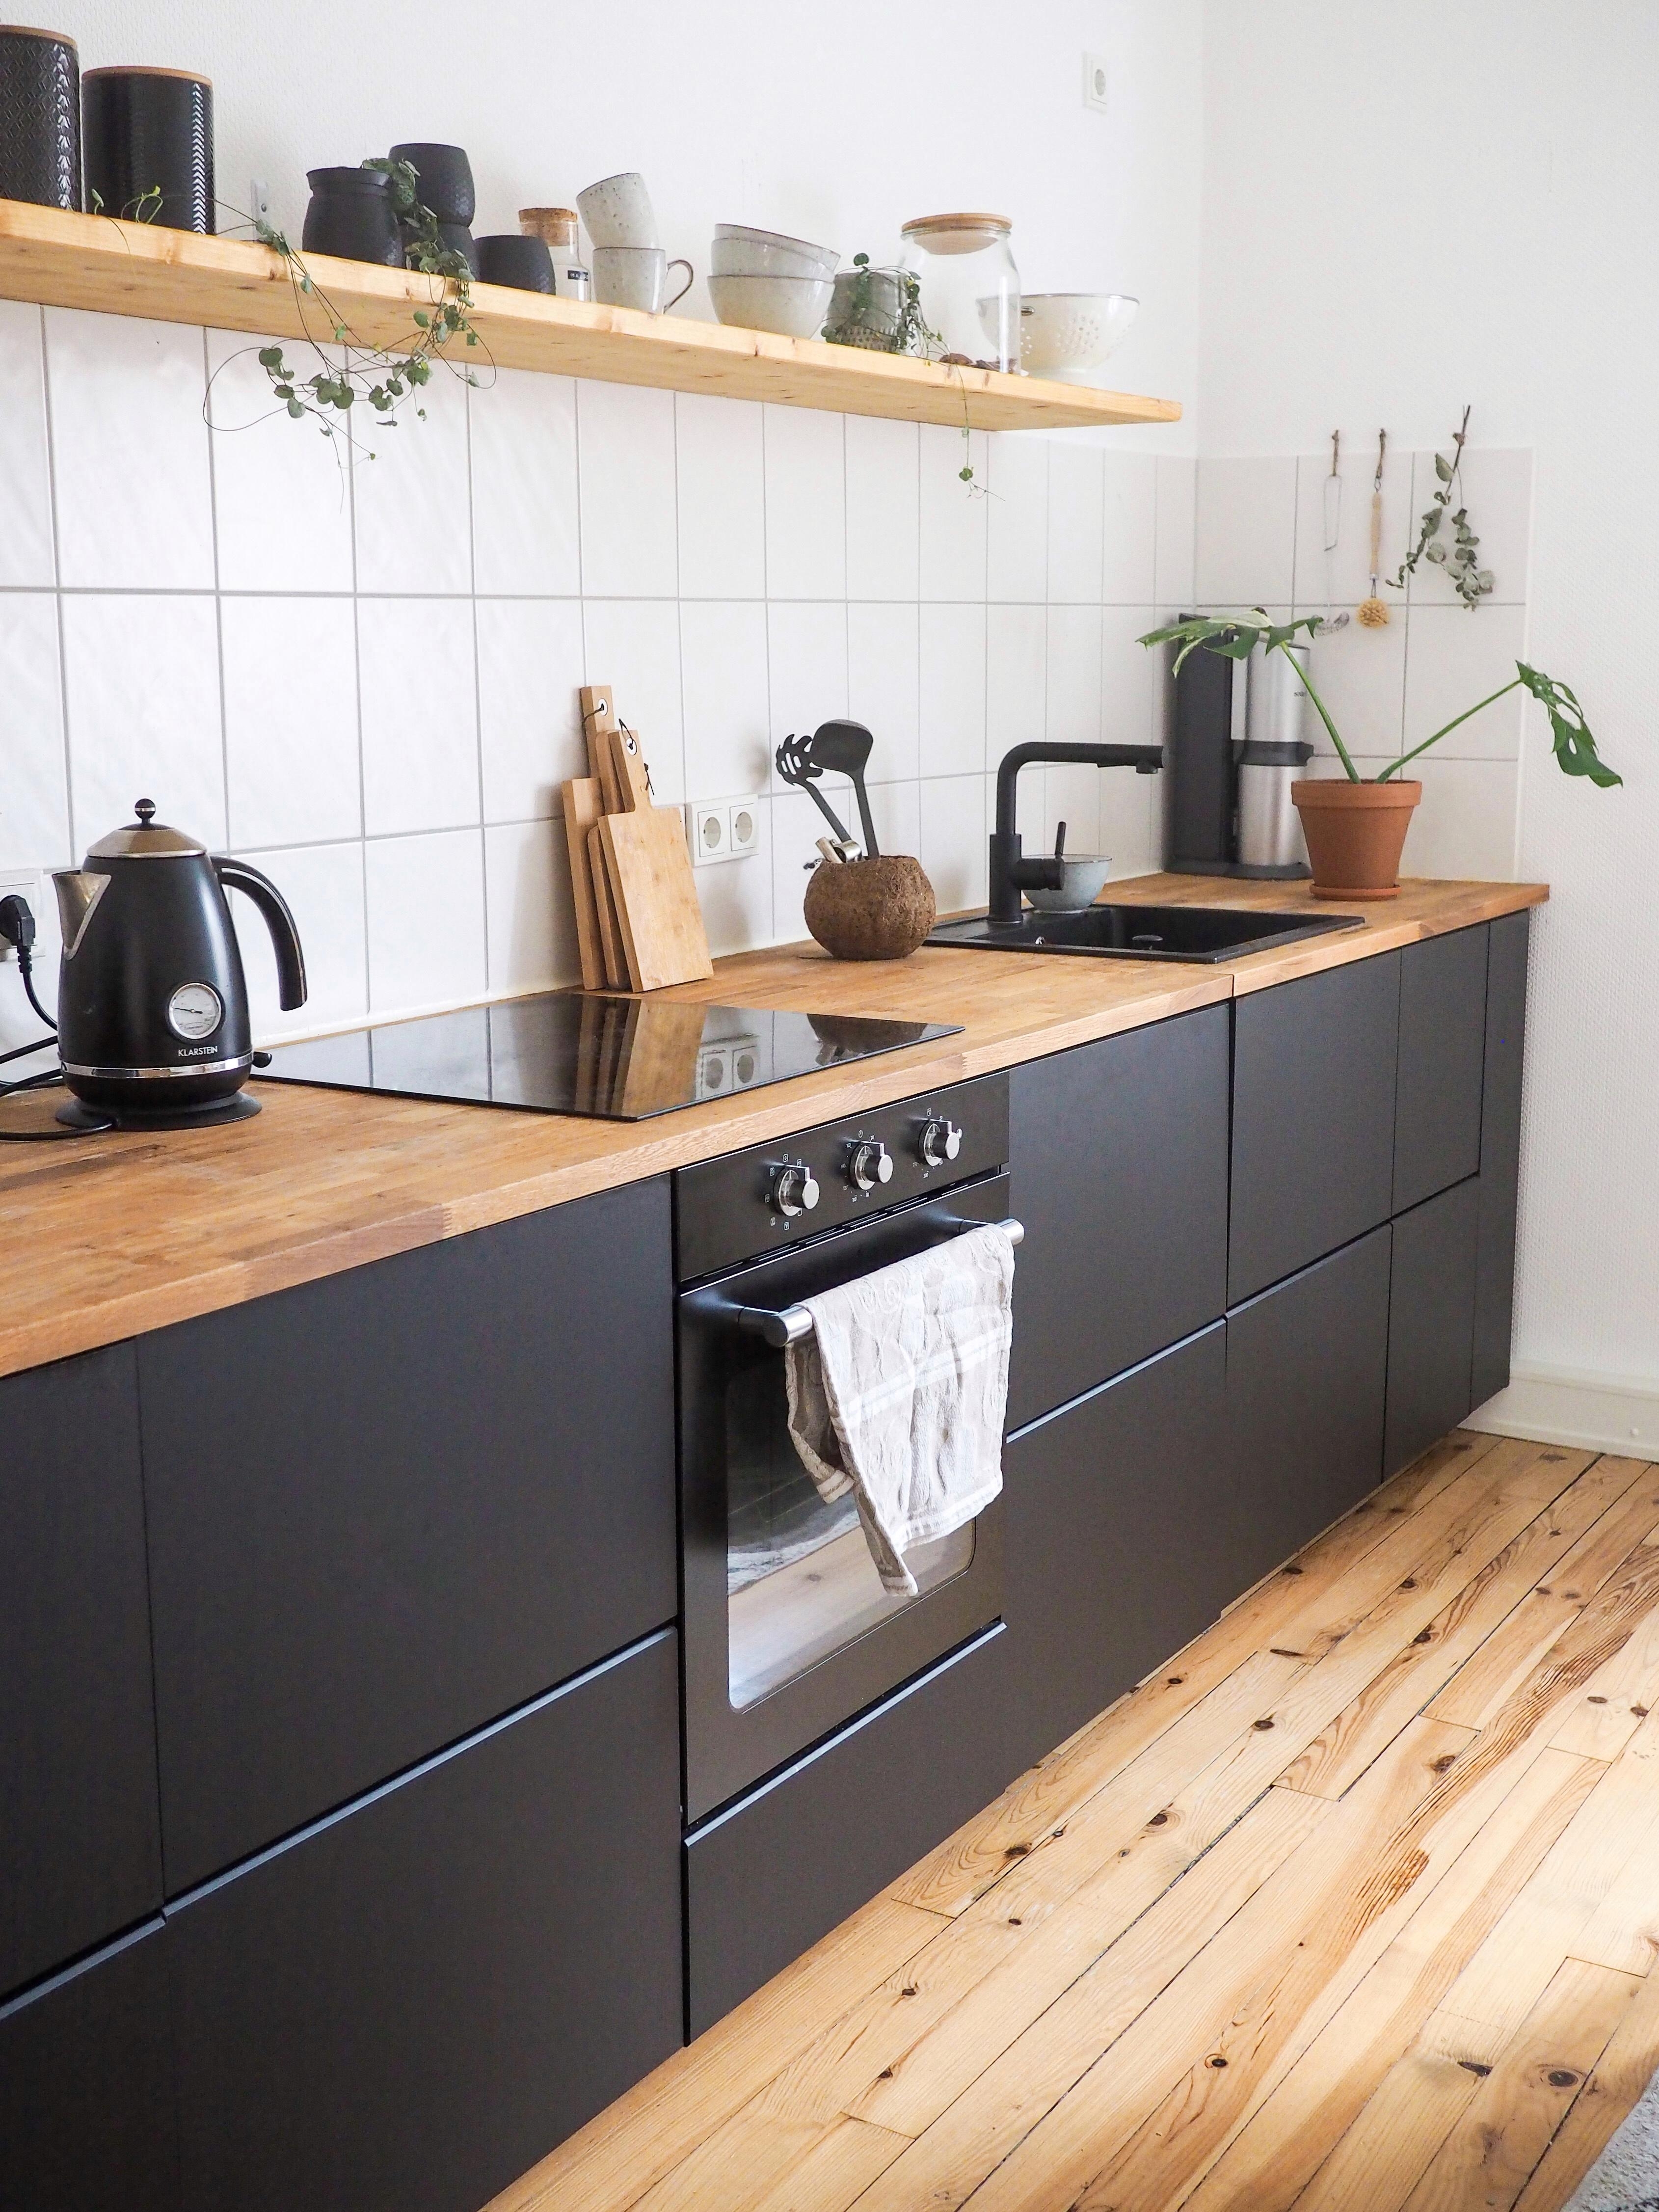 Küche mit Regal 🌟 
#kitchen #couchliebt #küche